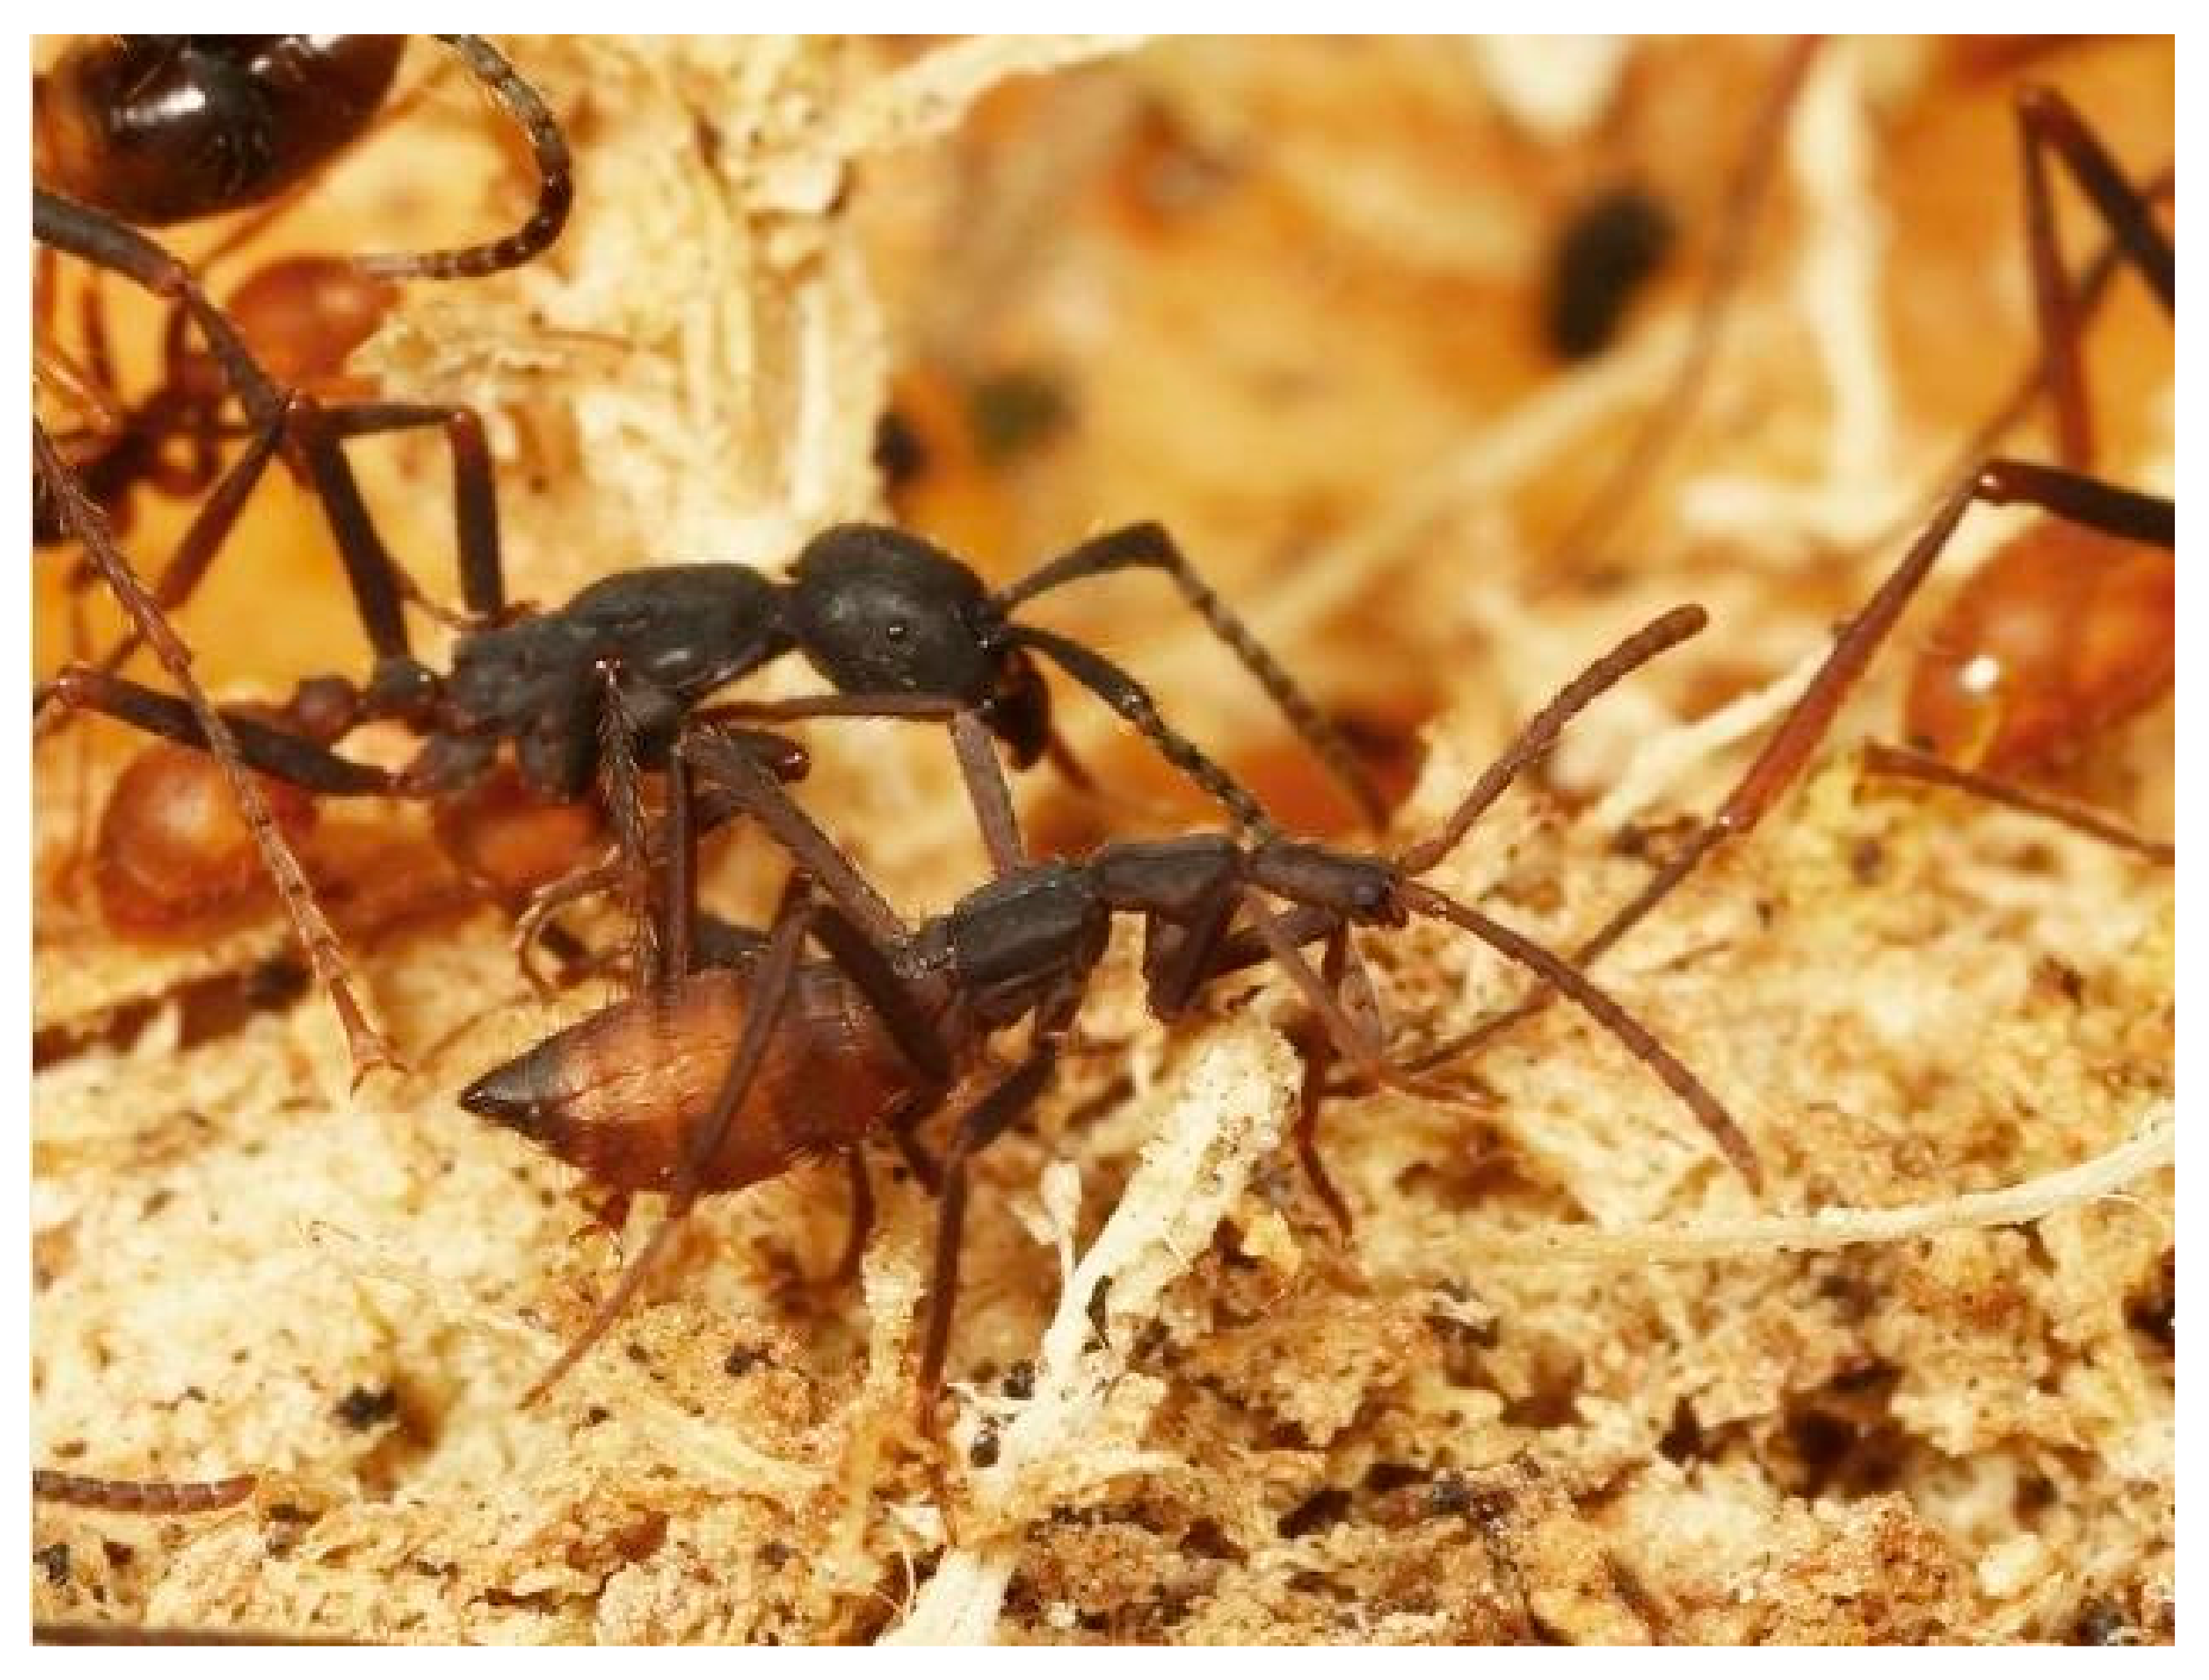 Название армейского муравья. Жук ломехуза. Муравьи Эцитоны. Eciton burchellii. Враги муравьев.